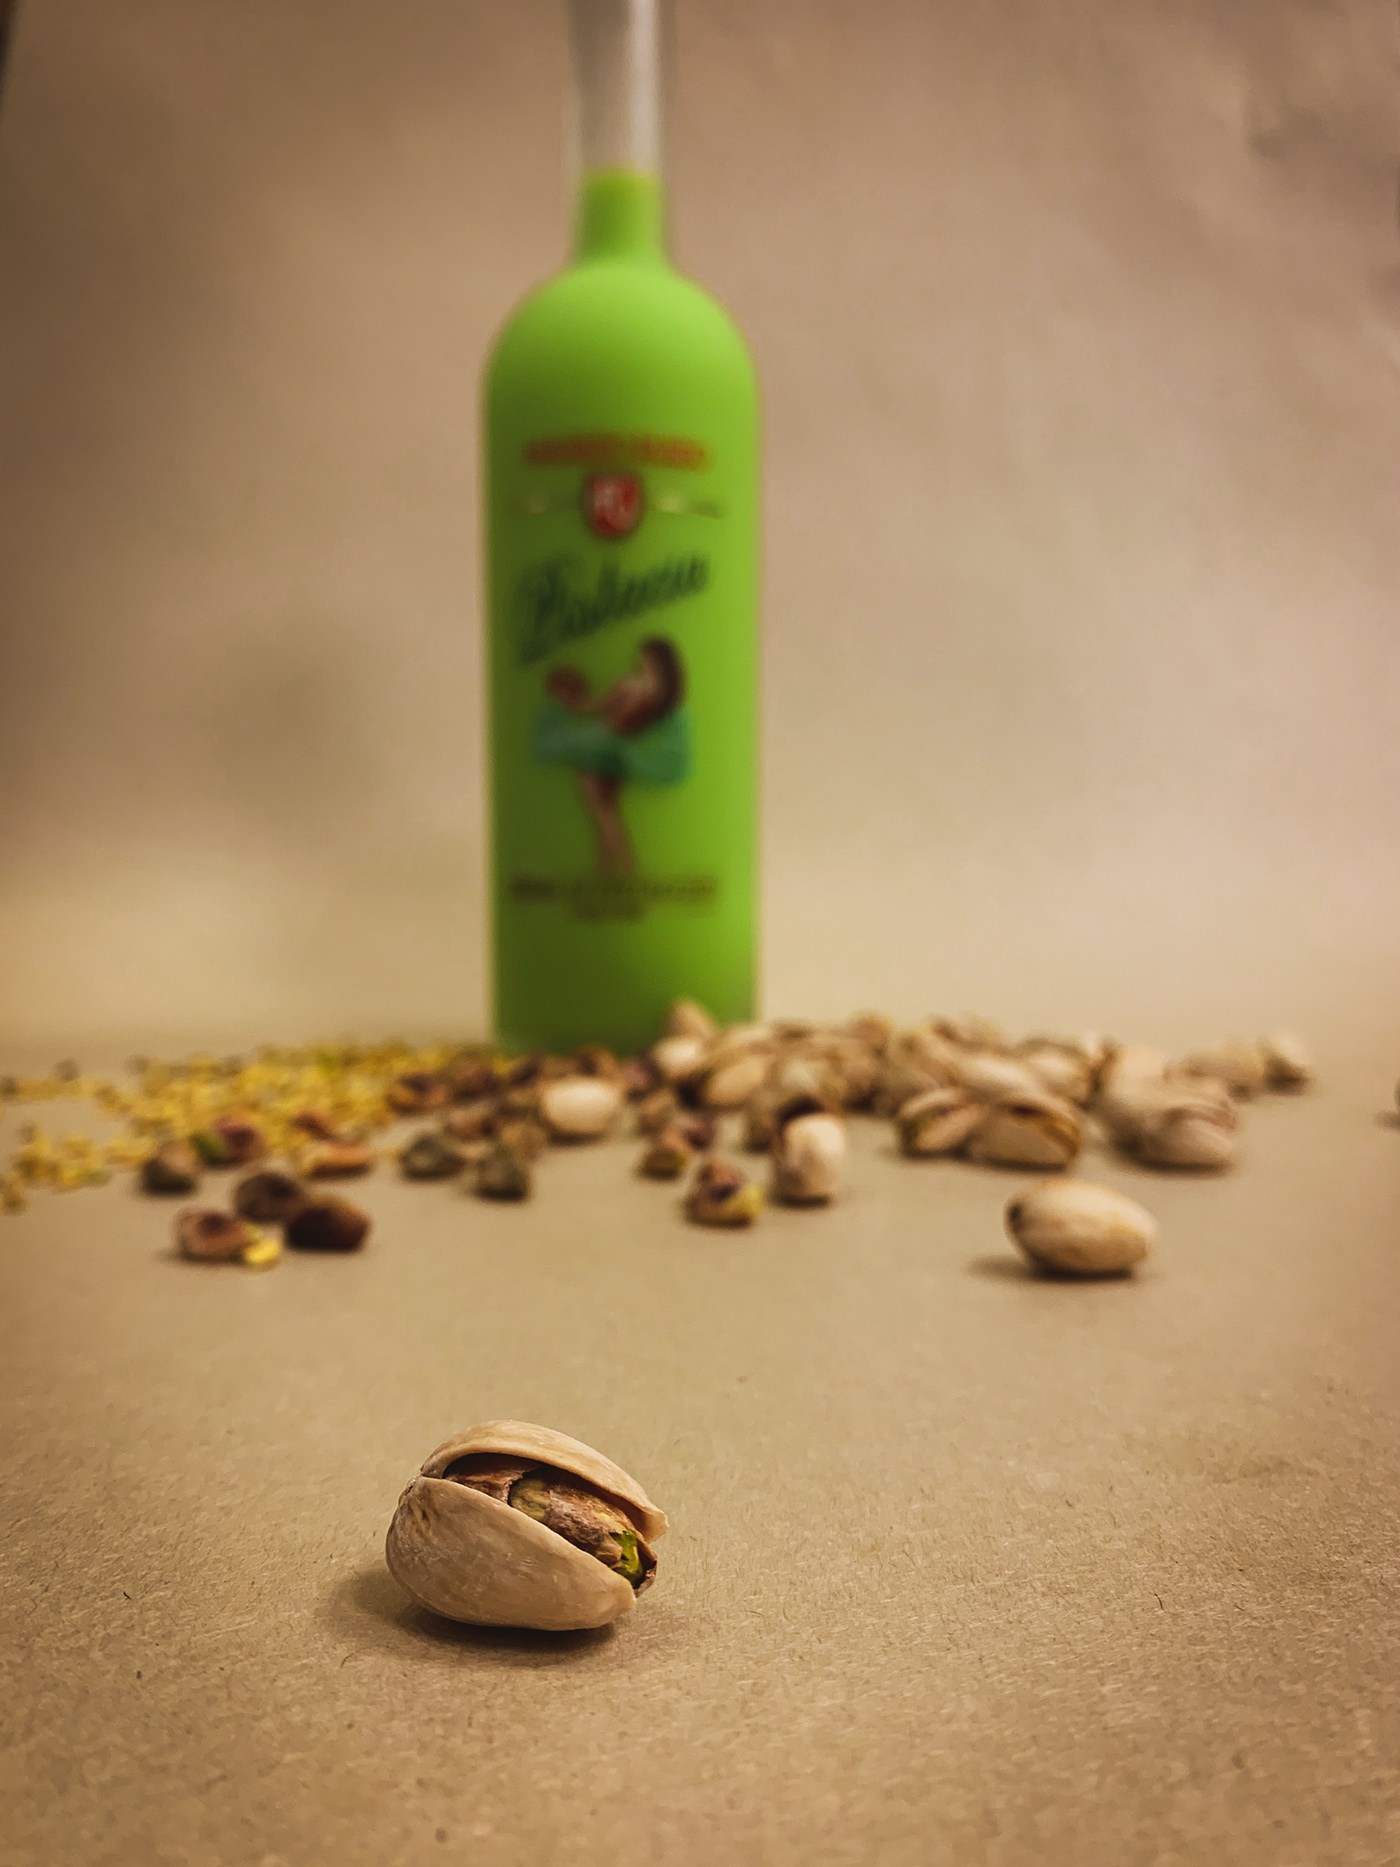 Pistachio liqueur alcohol pistachio Product Photography